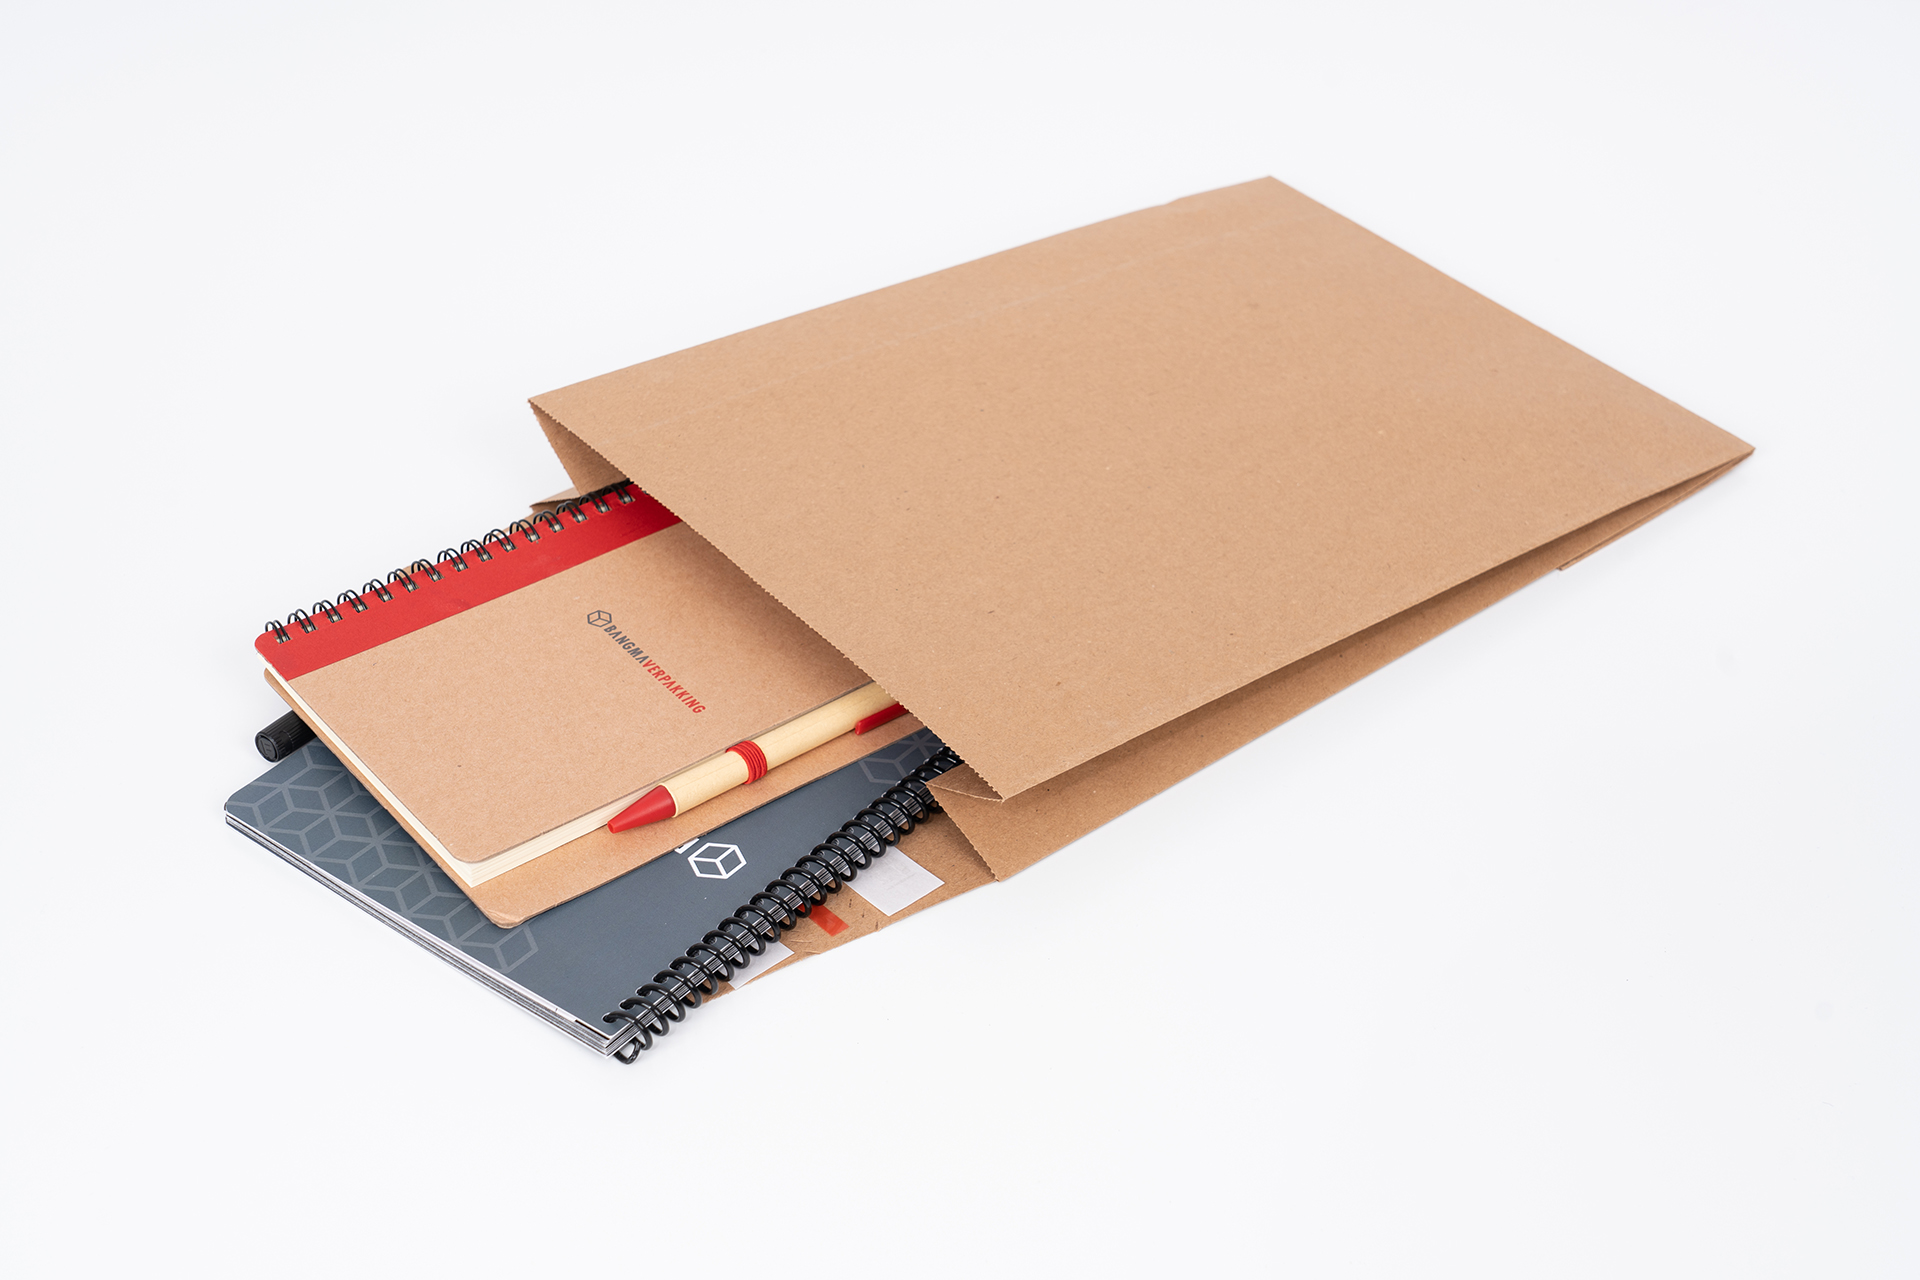 Bangma Verpakking: de papieren verzendverpakkingen zijn verkrijgbaar in kleine hoeveelheden.